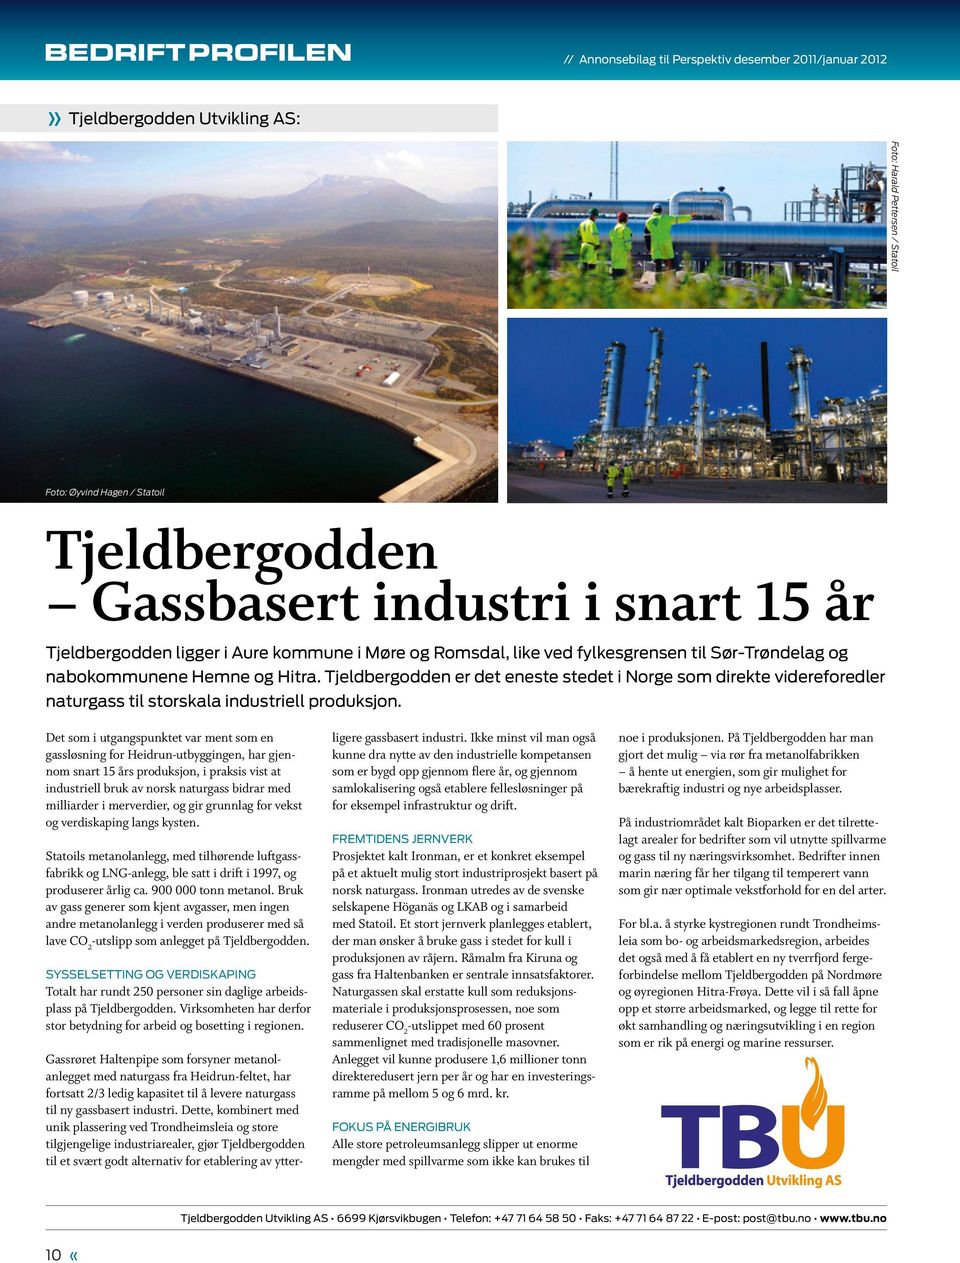 Tjeldbergodden er det eneste stedet i Norge som direkte videreforedler naturgass til storskala industriell produksjon.